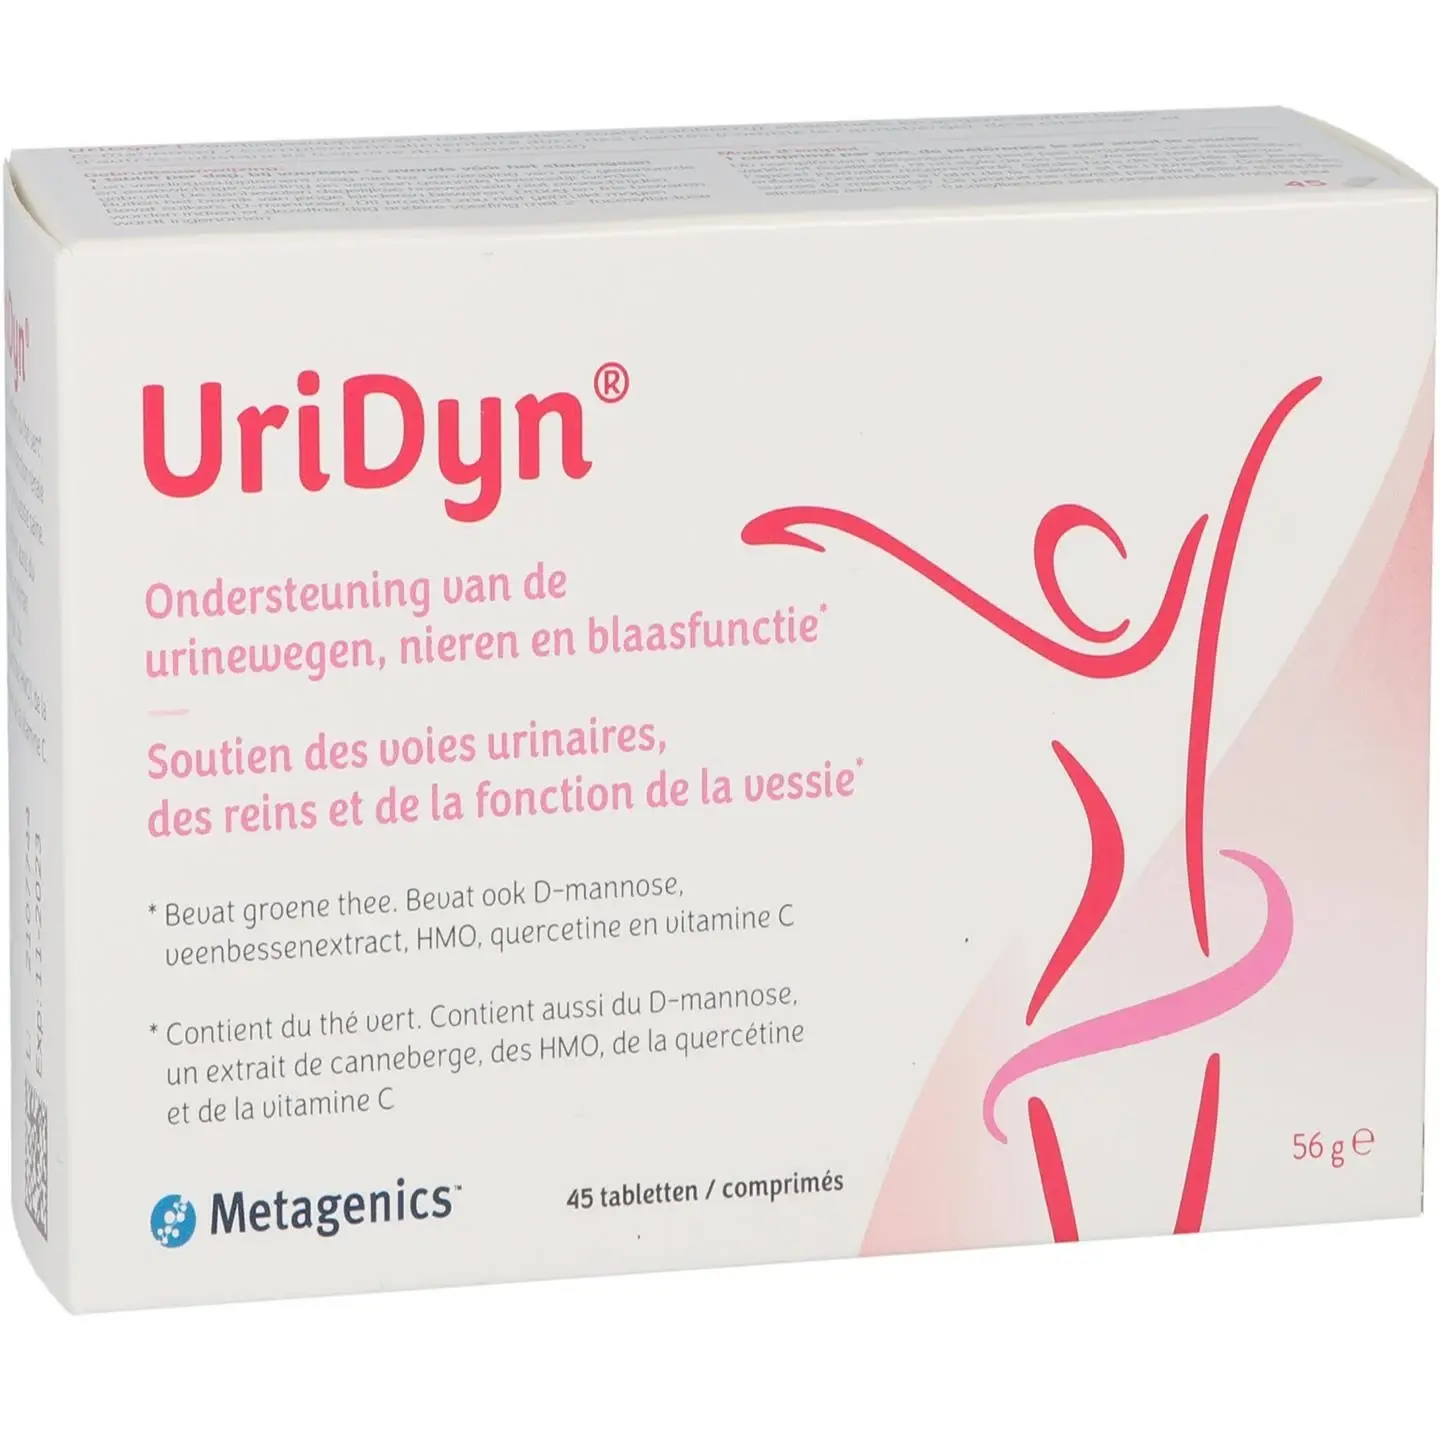 Uridyn NF 45 tabletten Metagenics